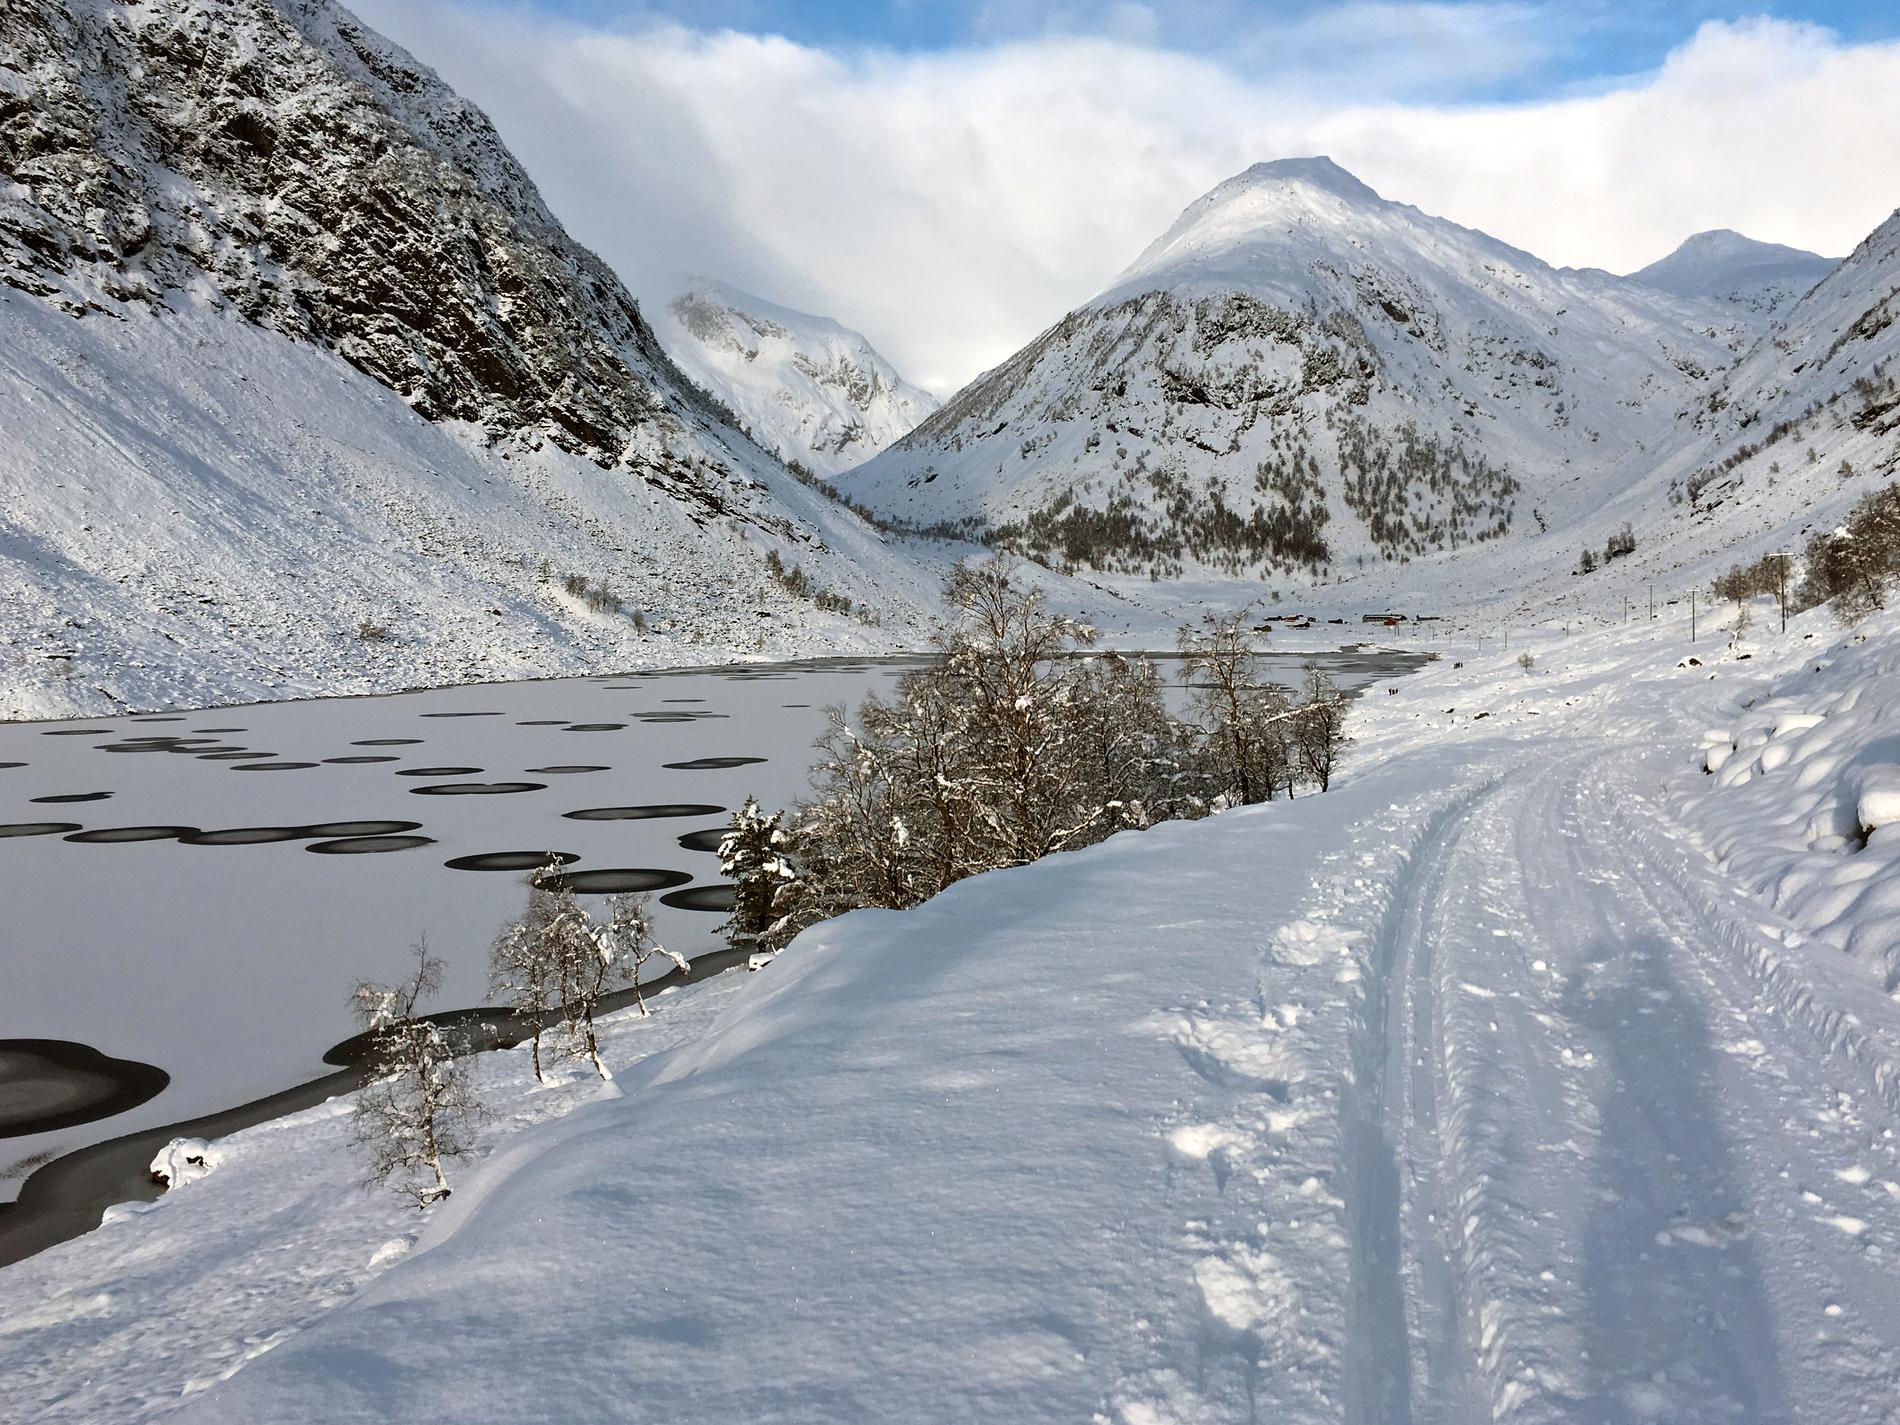 FULLT AV HULL: Anestølsvatnet var fullt av runde hull i isen da Anne Rudsengen gikk forbi på skitur sist søndag. – Jeg er ikke overtroisk, så jeg skjønte at dette måtte ha en naturfaglig forklaring, sier hun.